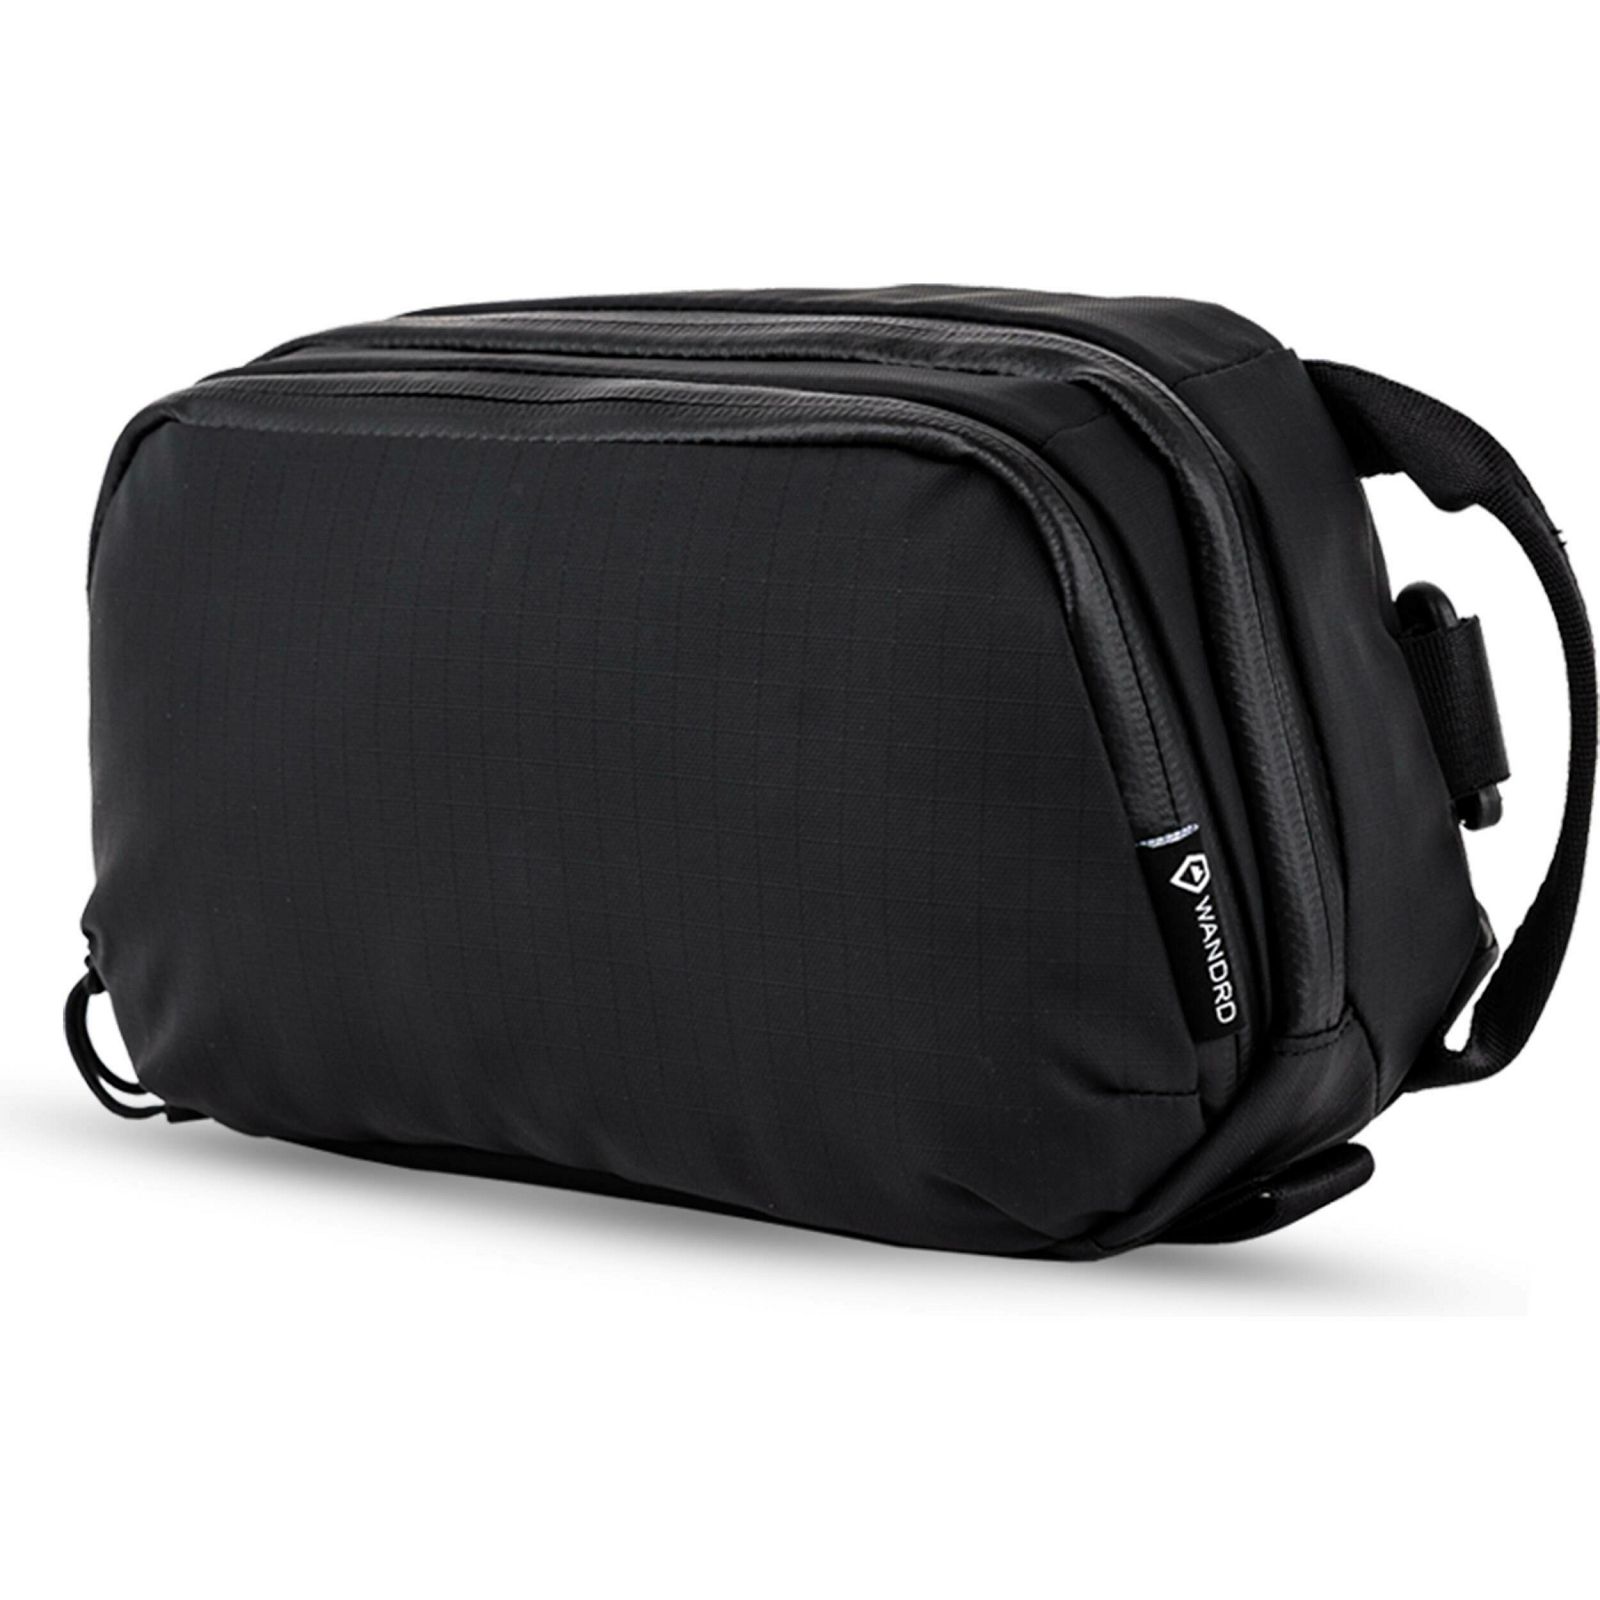 Wandrd Tech Bag Large Black 2.0 (TP-LG-BK-2)